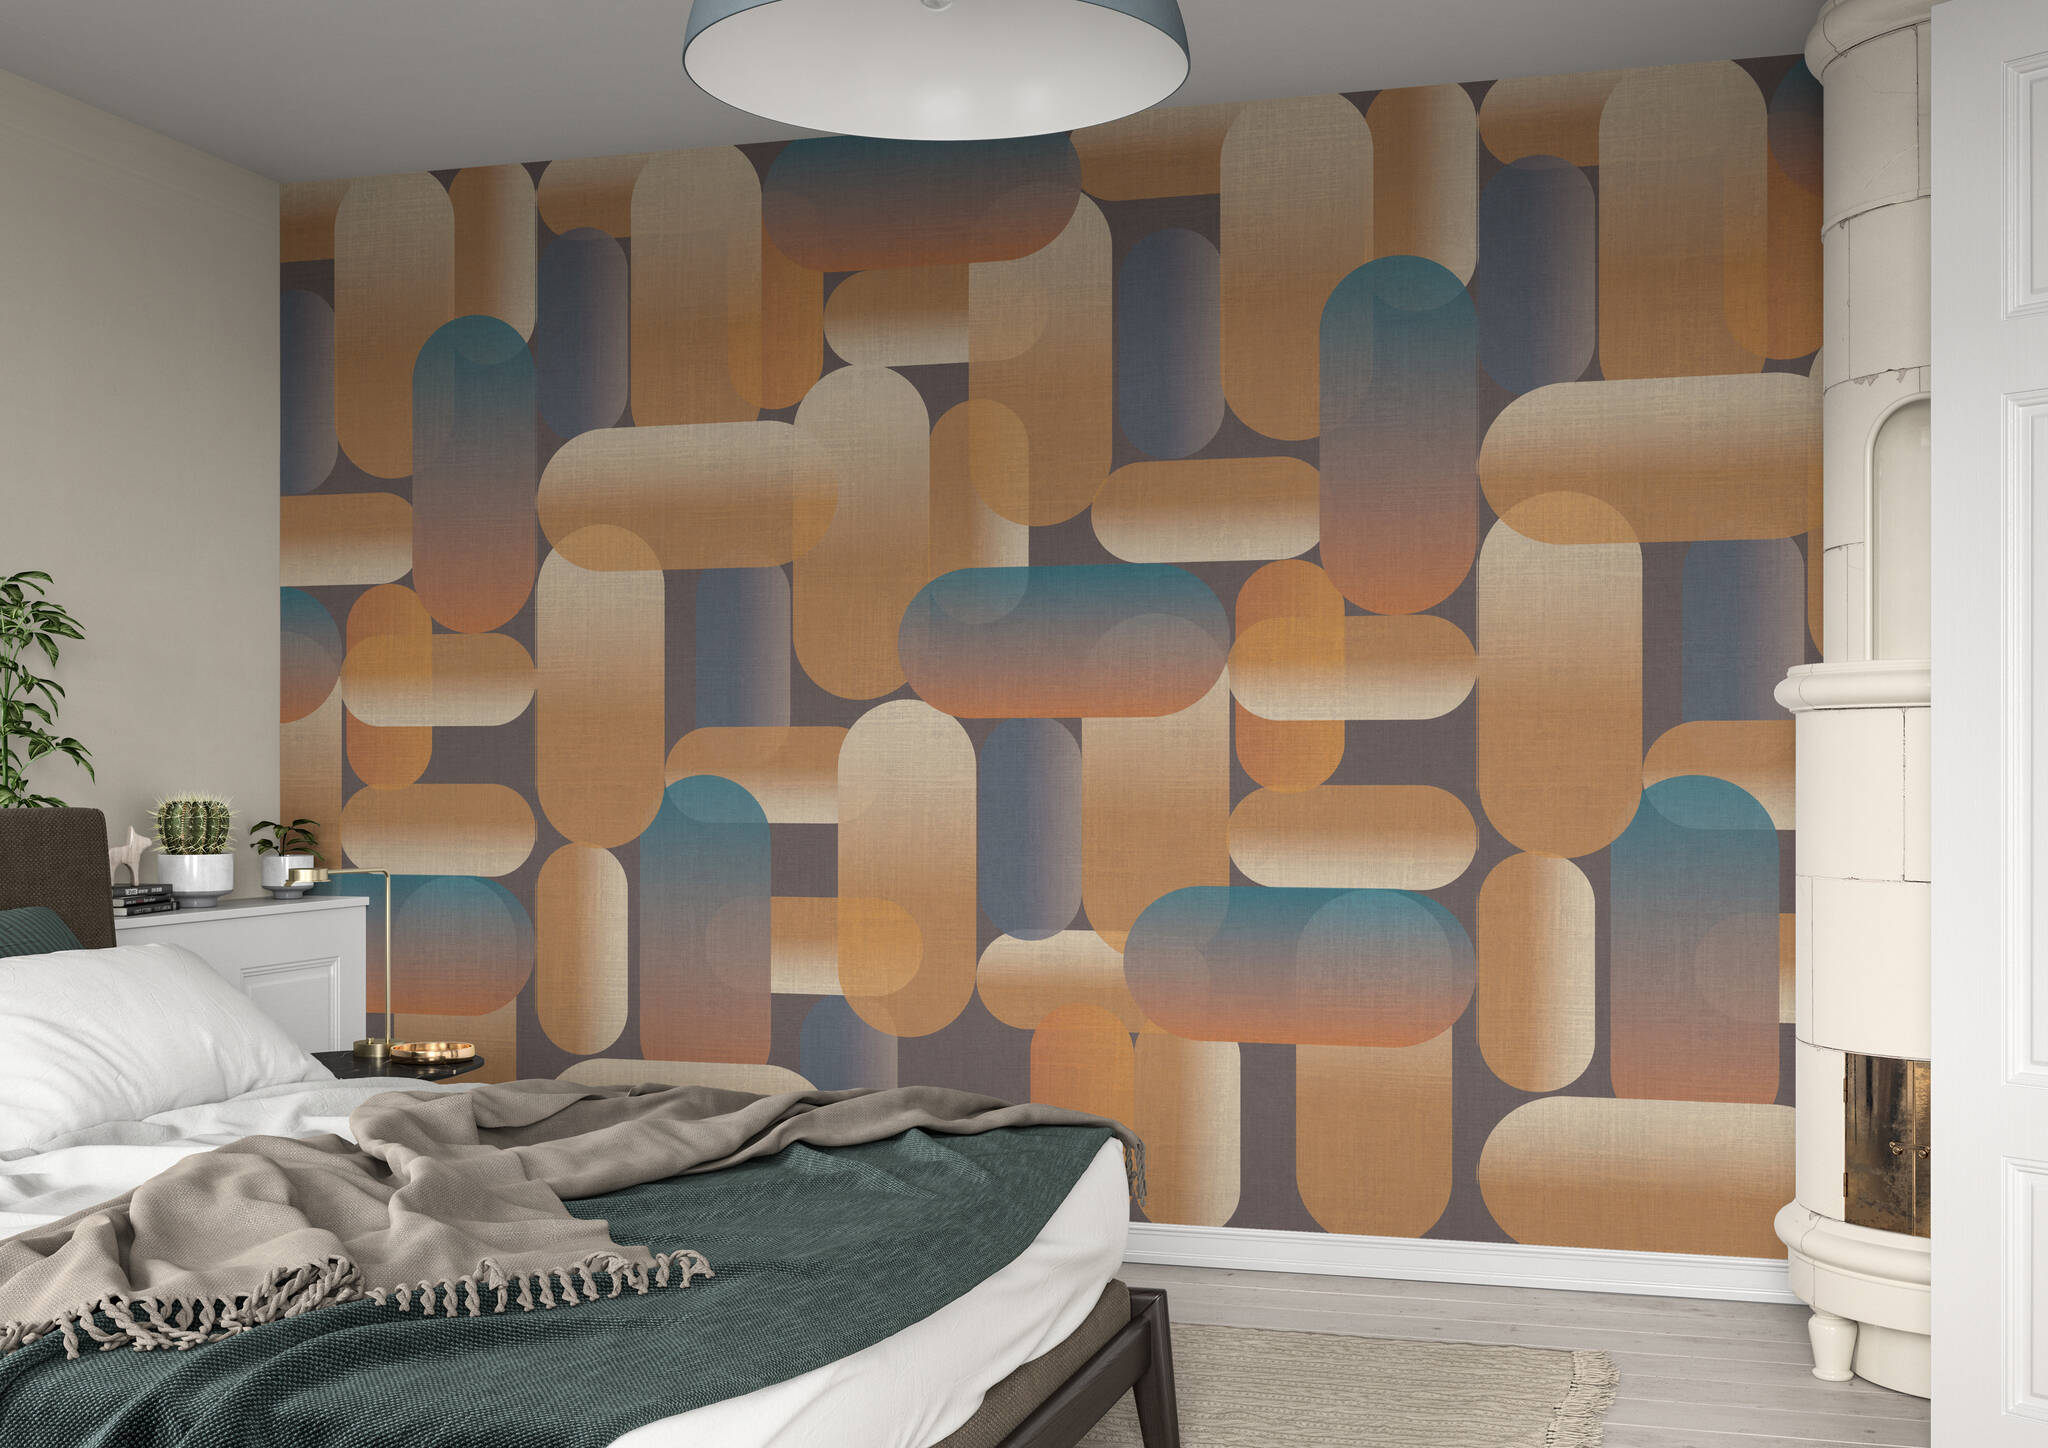 Schlafzimmer mit Wandbild - Anleihen aus den 70ern prägen dieses Oval-Muster in eleganten Messing- und Blau-Tönen